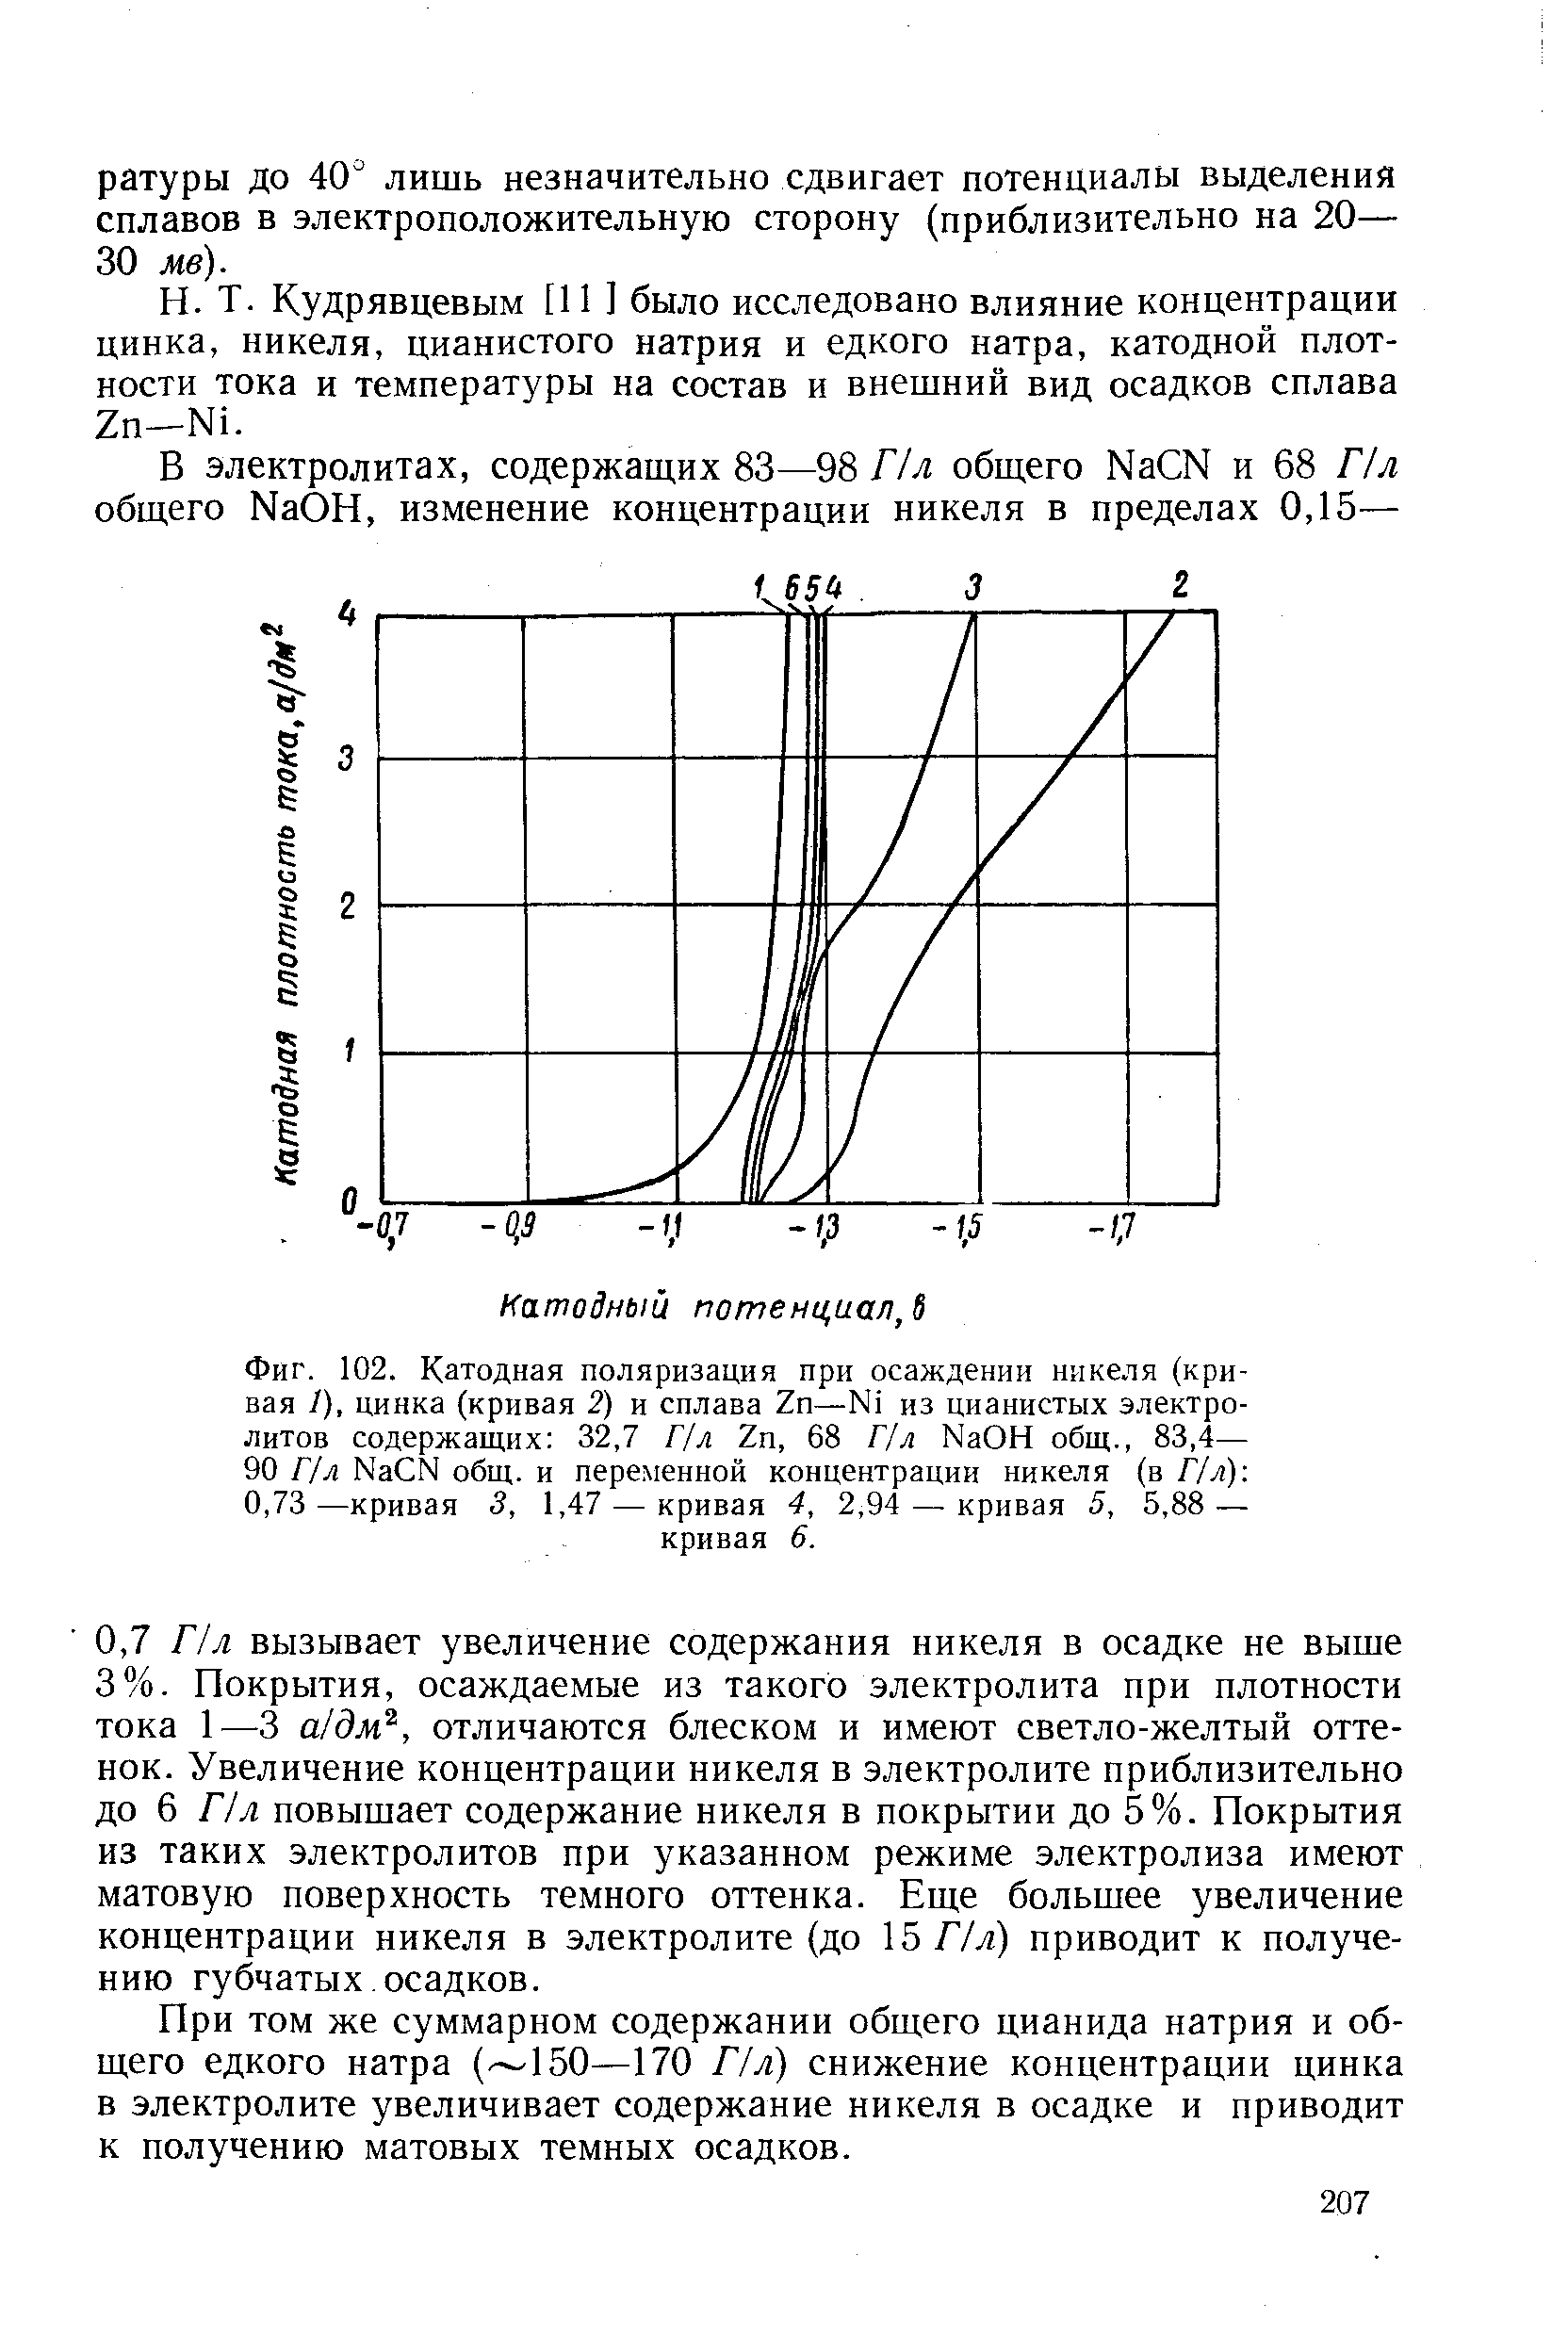 Фиг. 102. Катодная поляризация при осаждении никеля (кривая 1), цинка (кривая 2) и сплава Zn—N1 из цианистых электролитов содержащих 32,7 Г/л Zn, 68 Г/л NaOH общ., 83,4— 90 Г/л Na N общ. и переменной концентрации никеля (в Г/л) 0,73—кривая 3, 1,47 — кривая 4, 2,94 — кривая 5, 5,88 — кривая 6.
